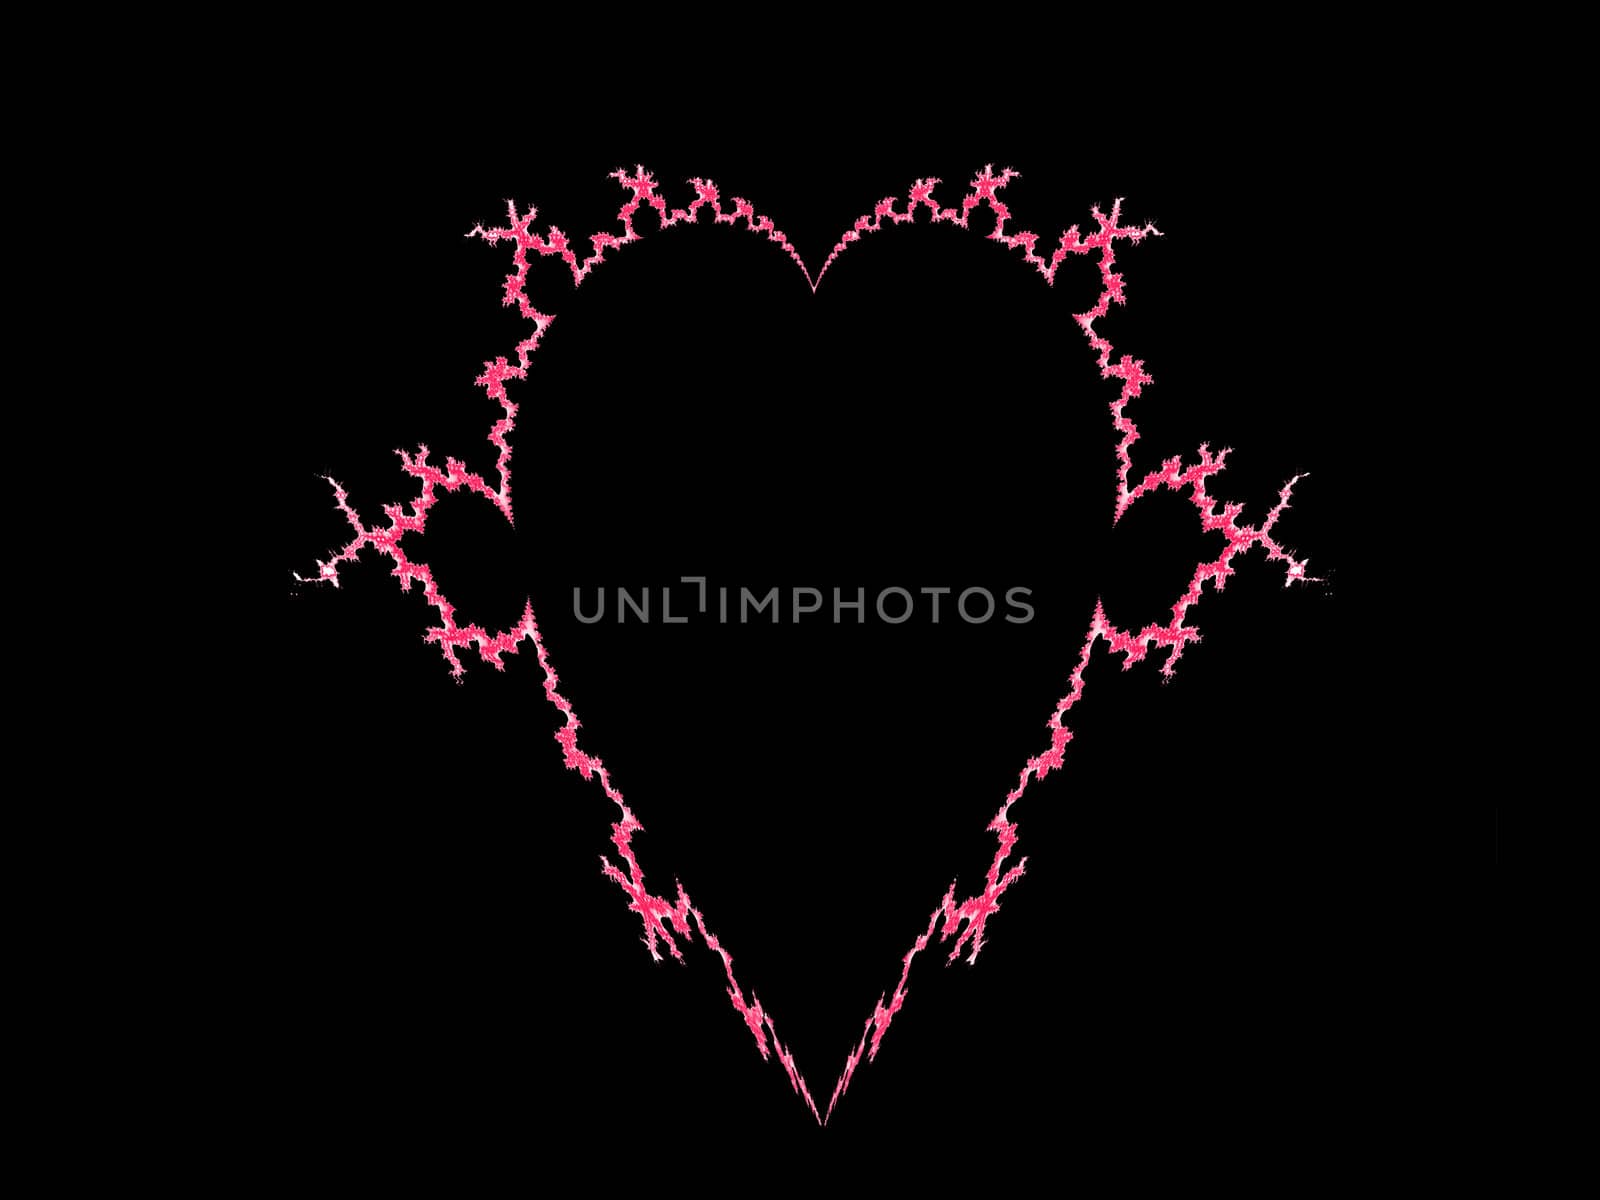 Pink heart on black background fractal type design